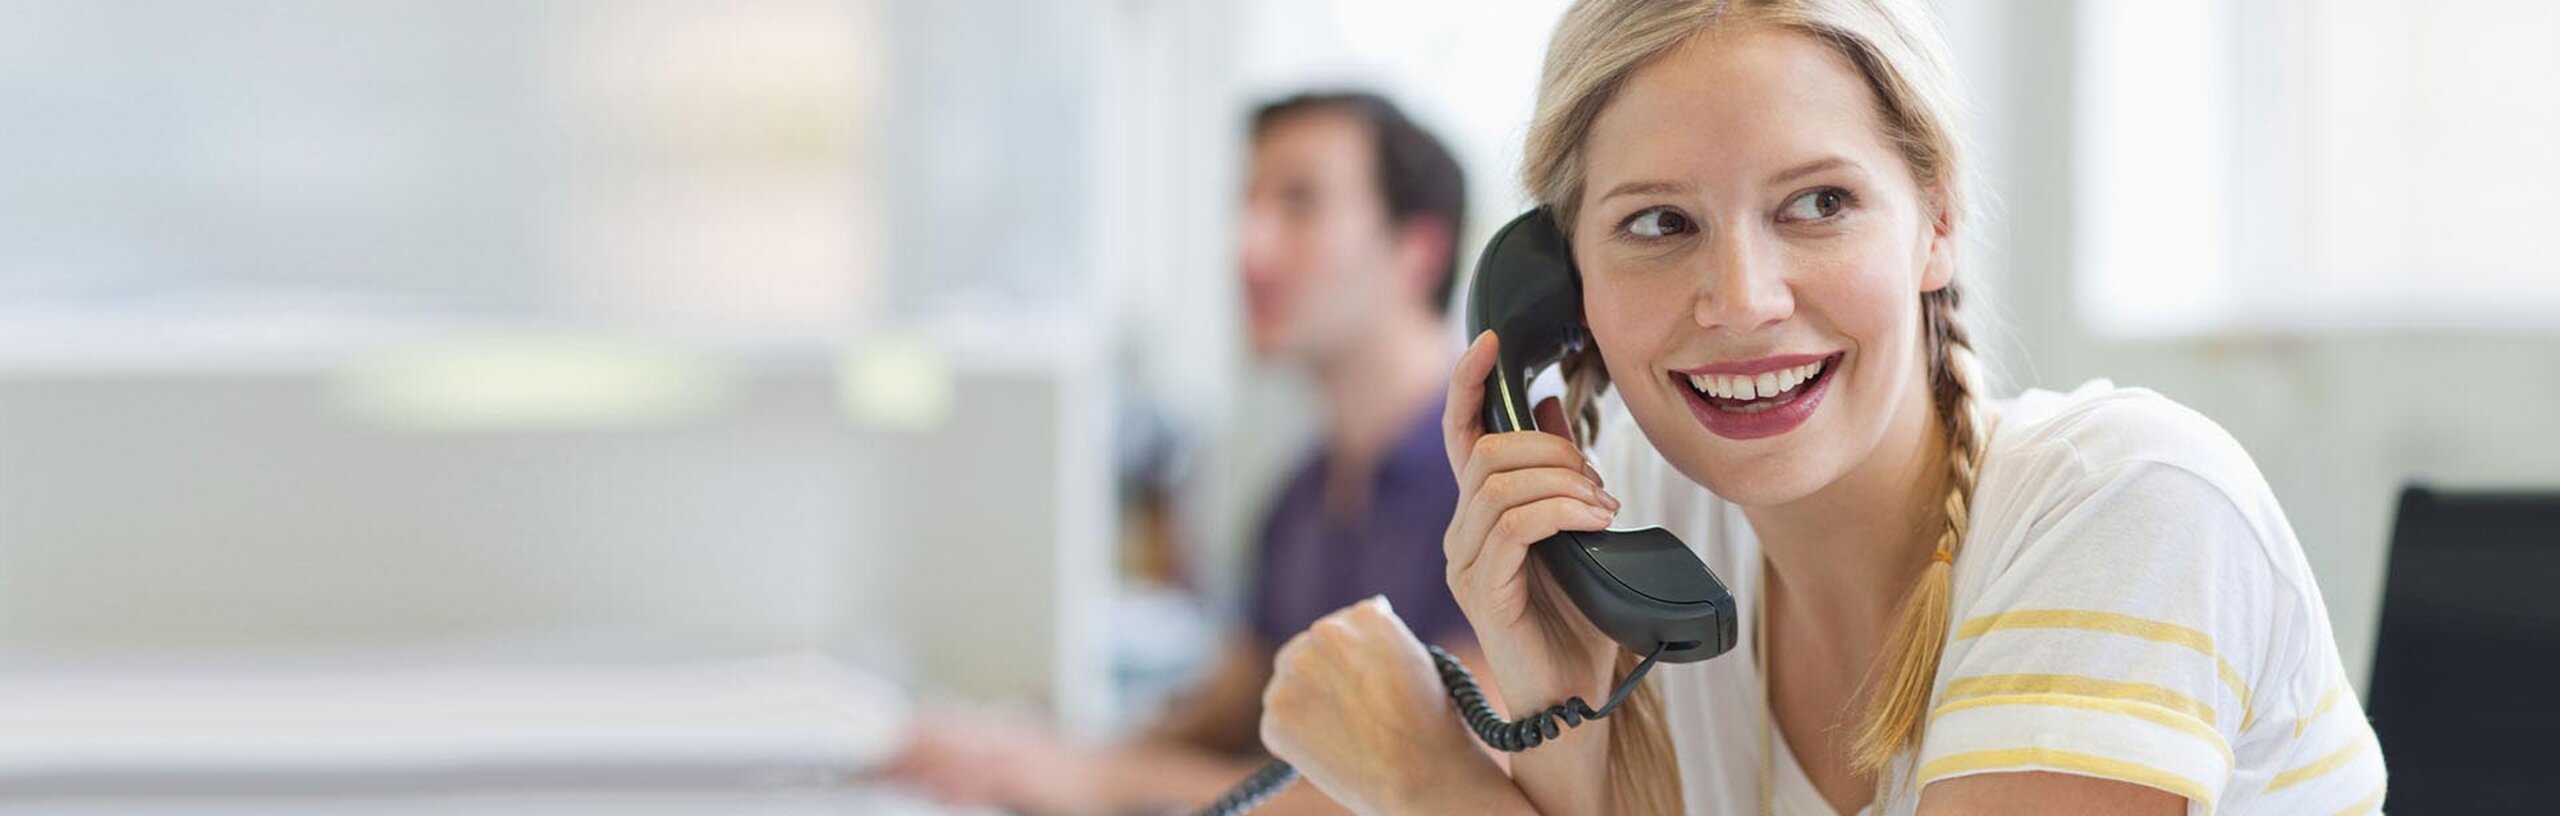 Eine Mitarbeiterin im gelb-weißen Hemd telefoniert mit einem Festnetz-Telefon und lächelt.